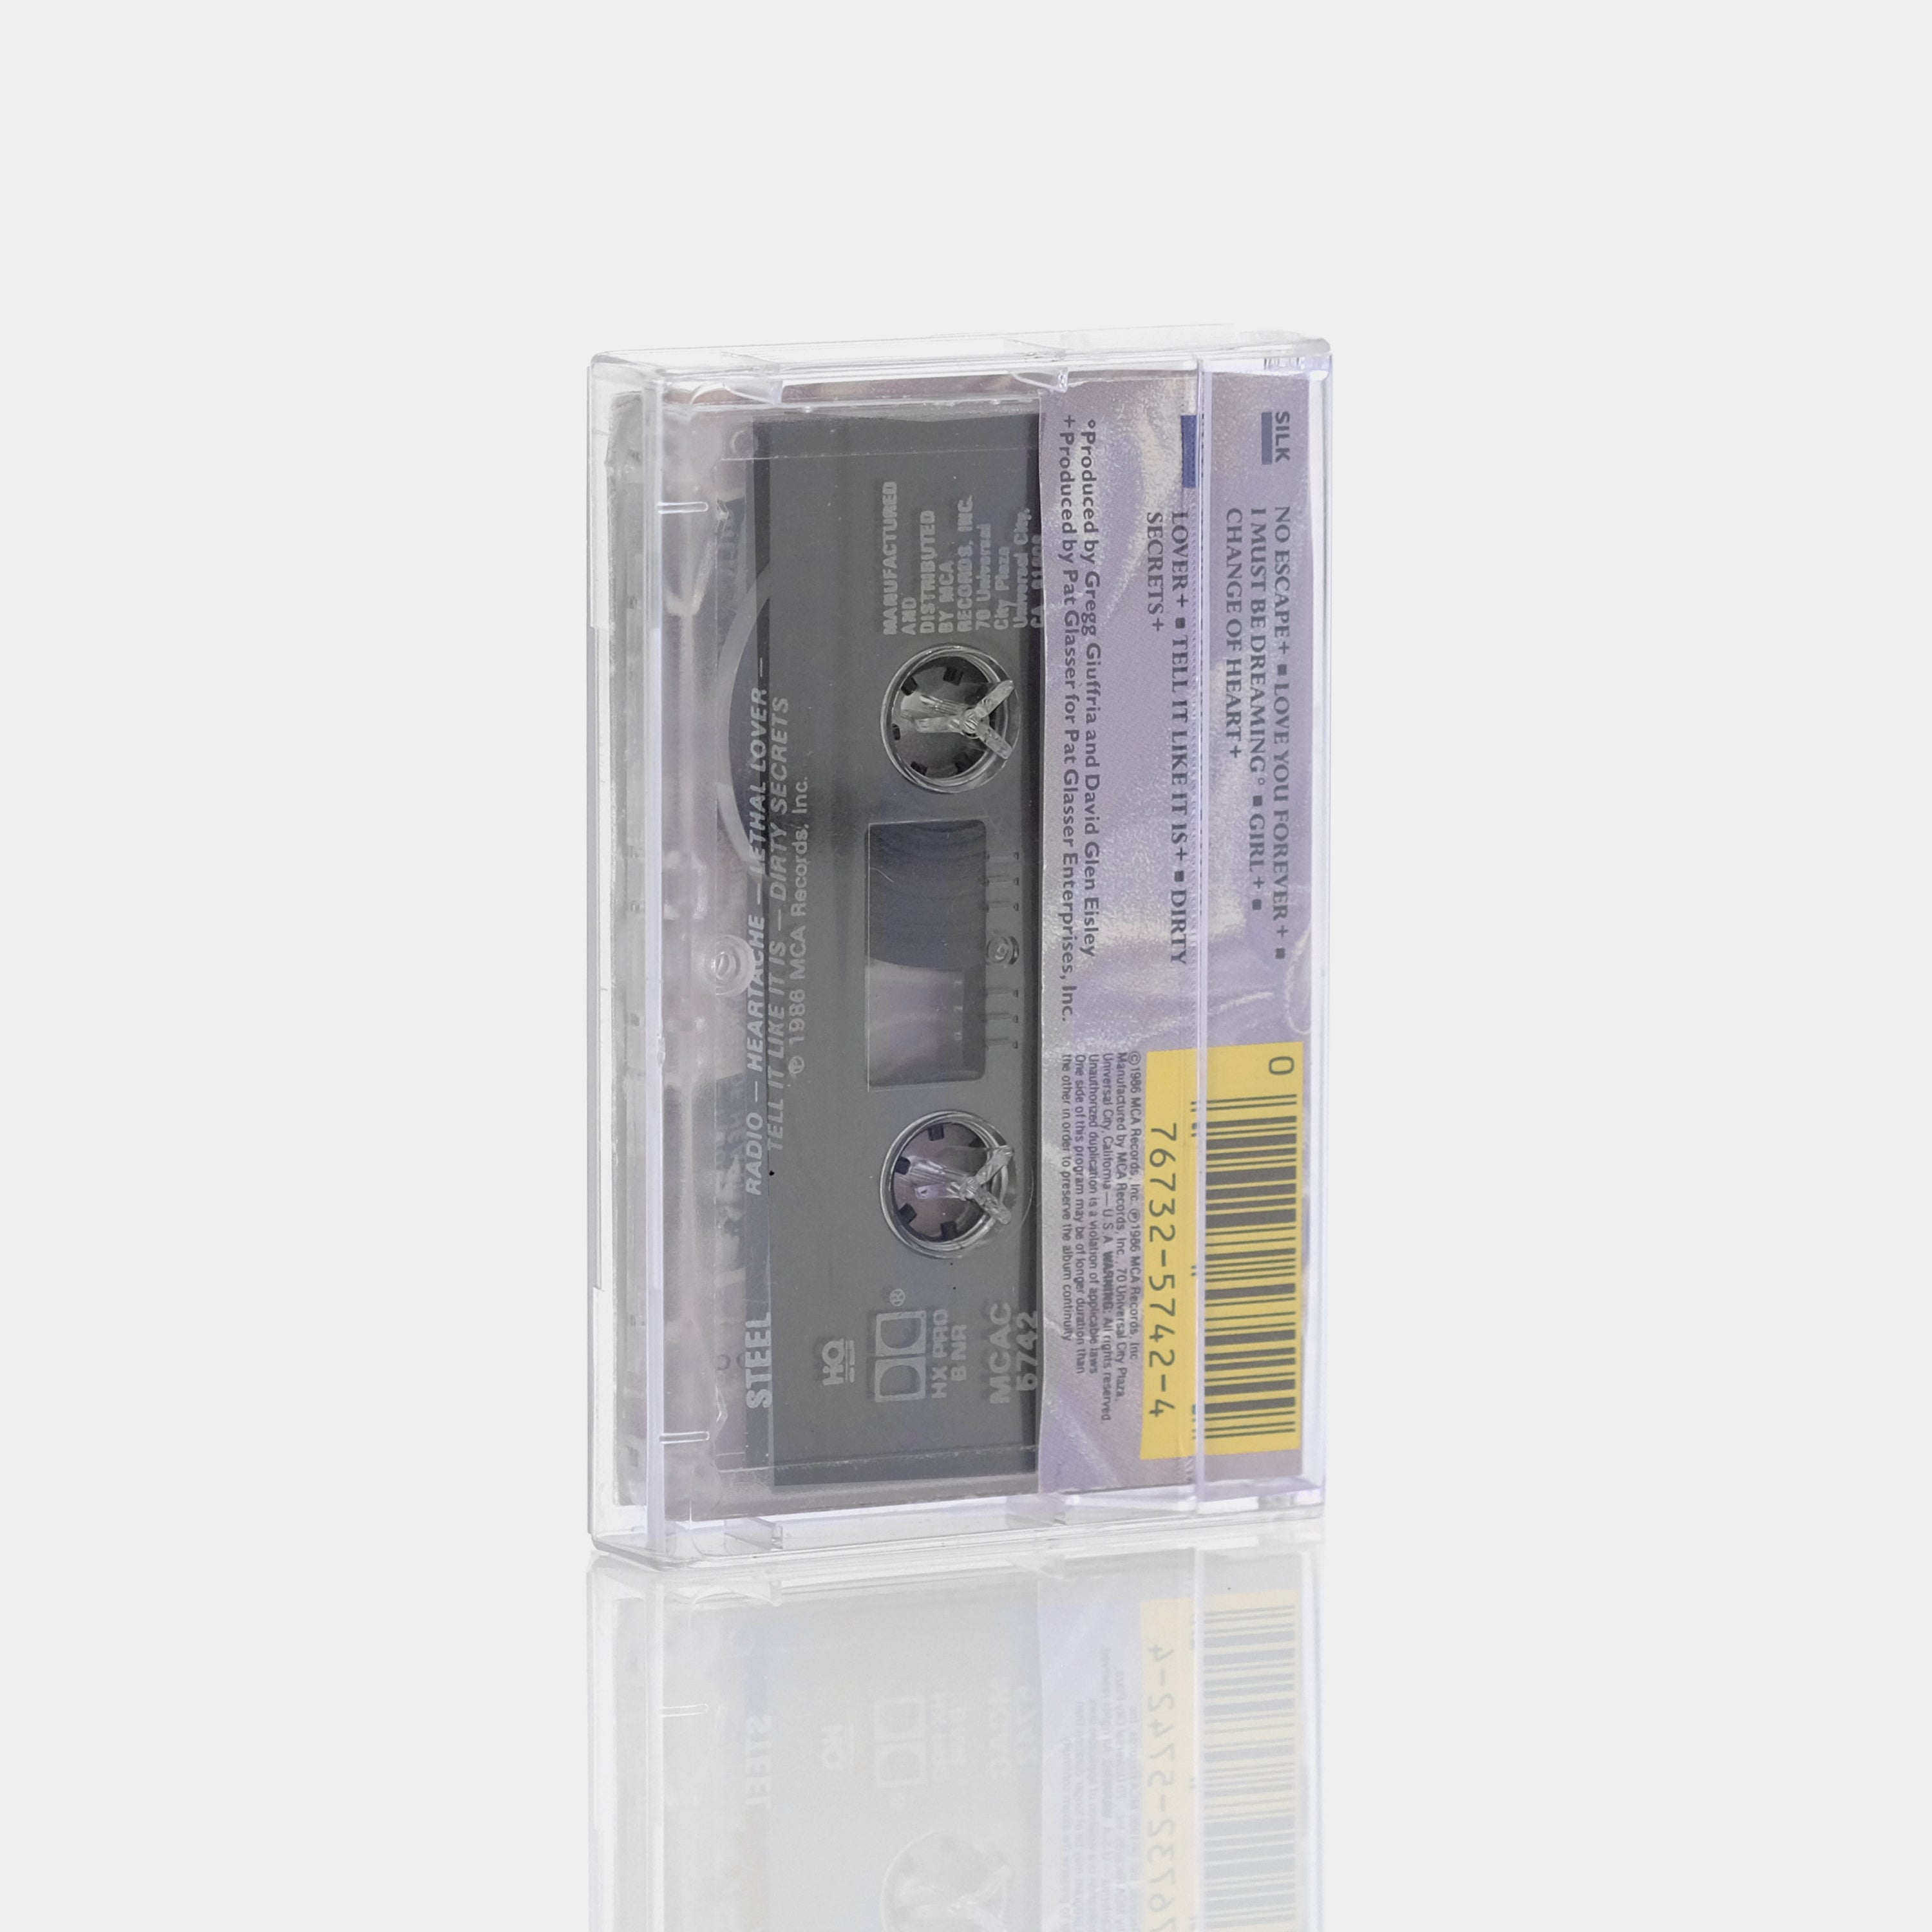 Giuffria - Silk + Steel Cassette Tape